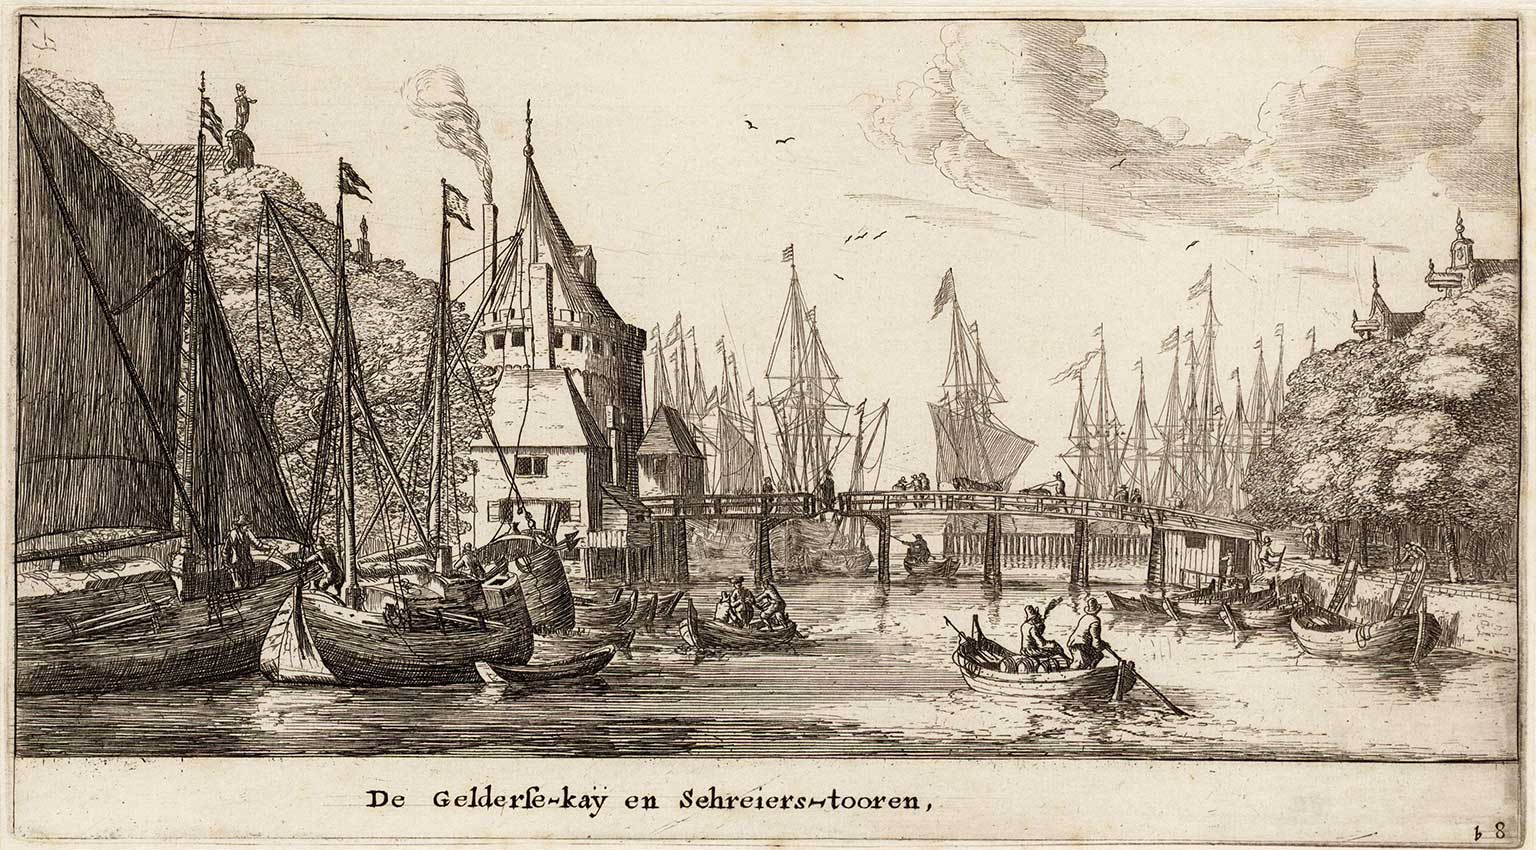 Schreierstoren, Amsterdam, from Geldersekade, engraving from 1652 by Reinier Nooms